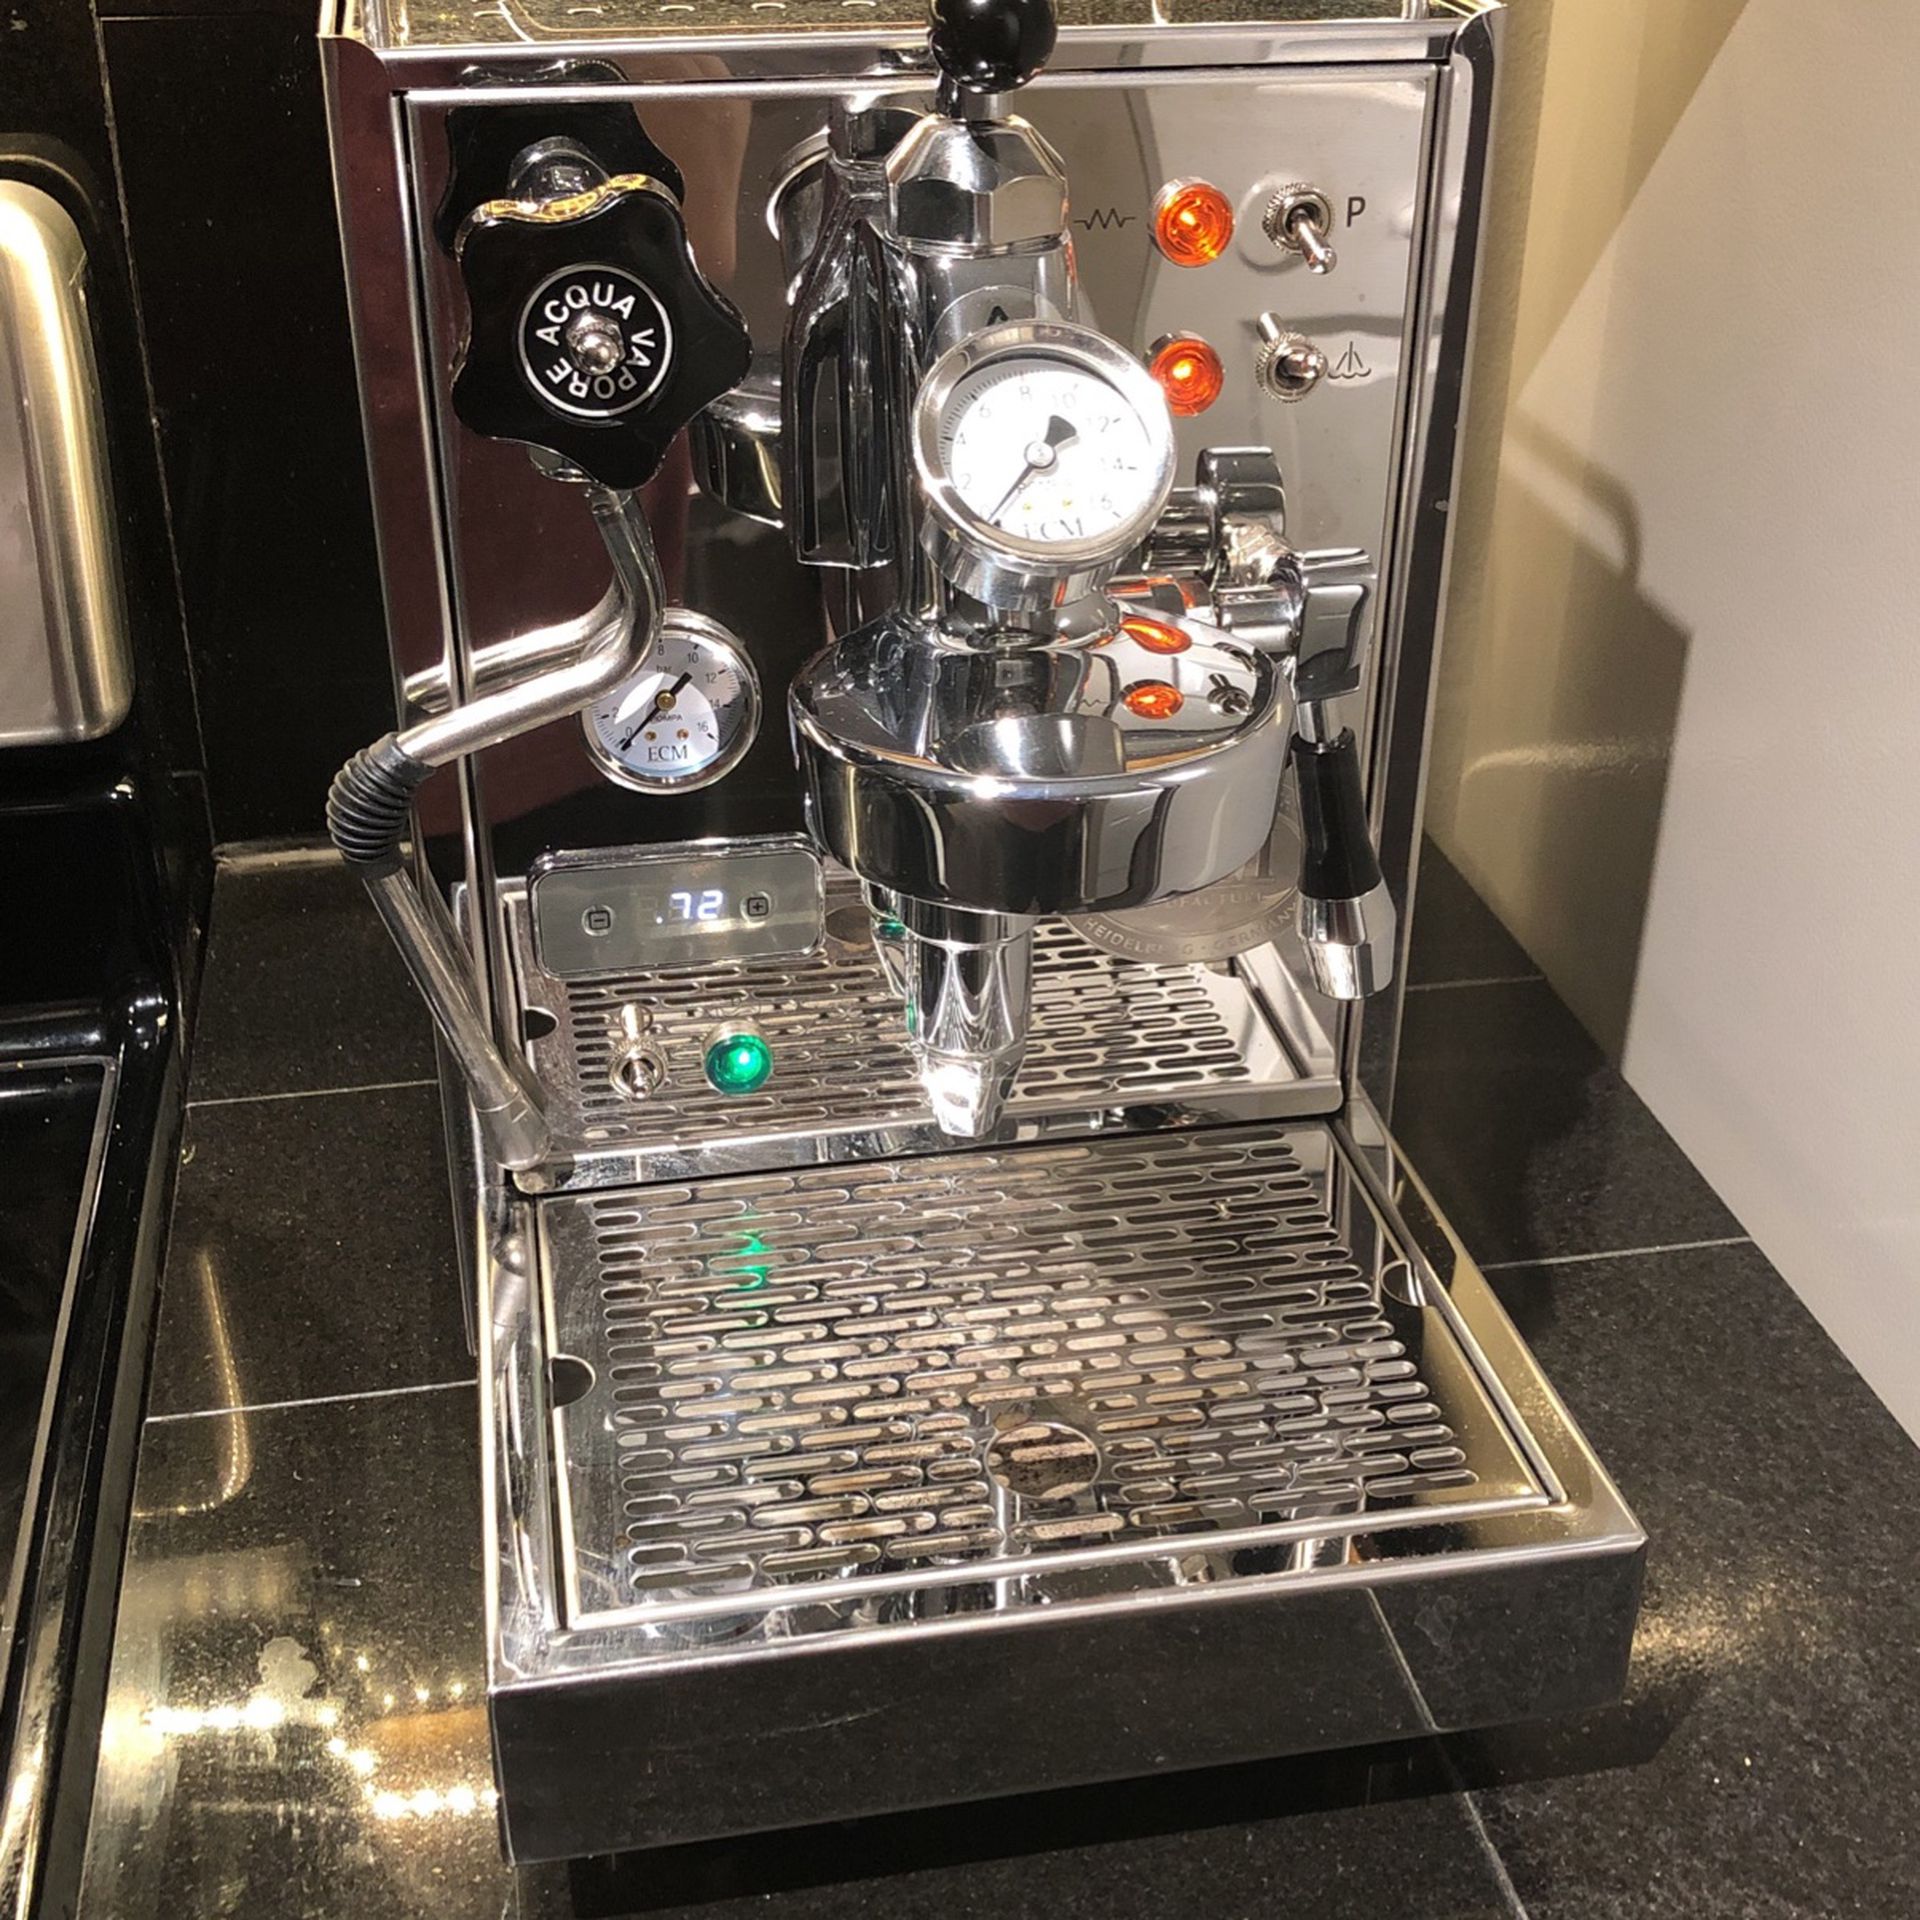 ECM Classika PID Espresso Machine With Flow Control